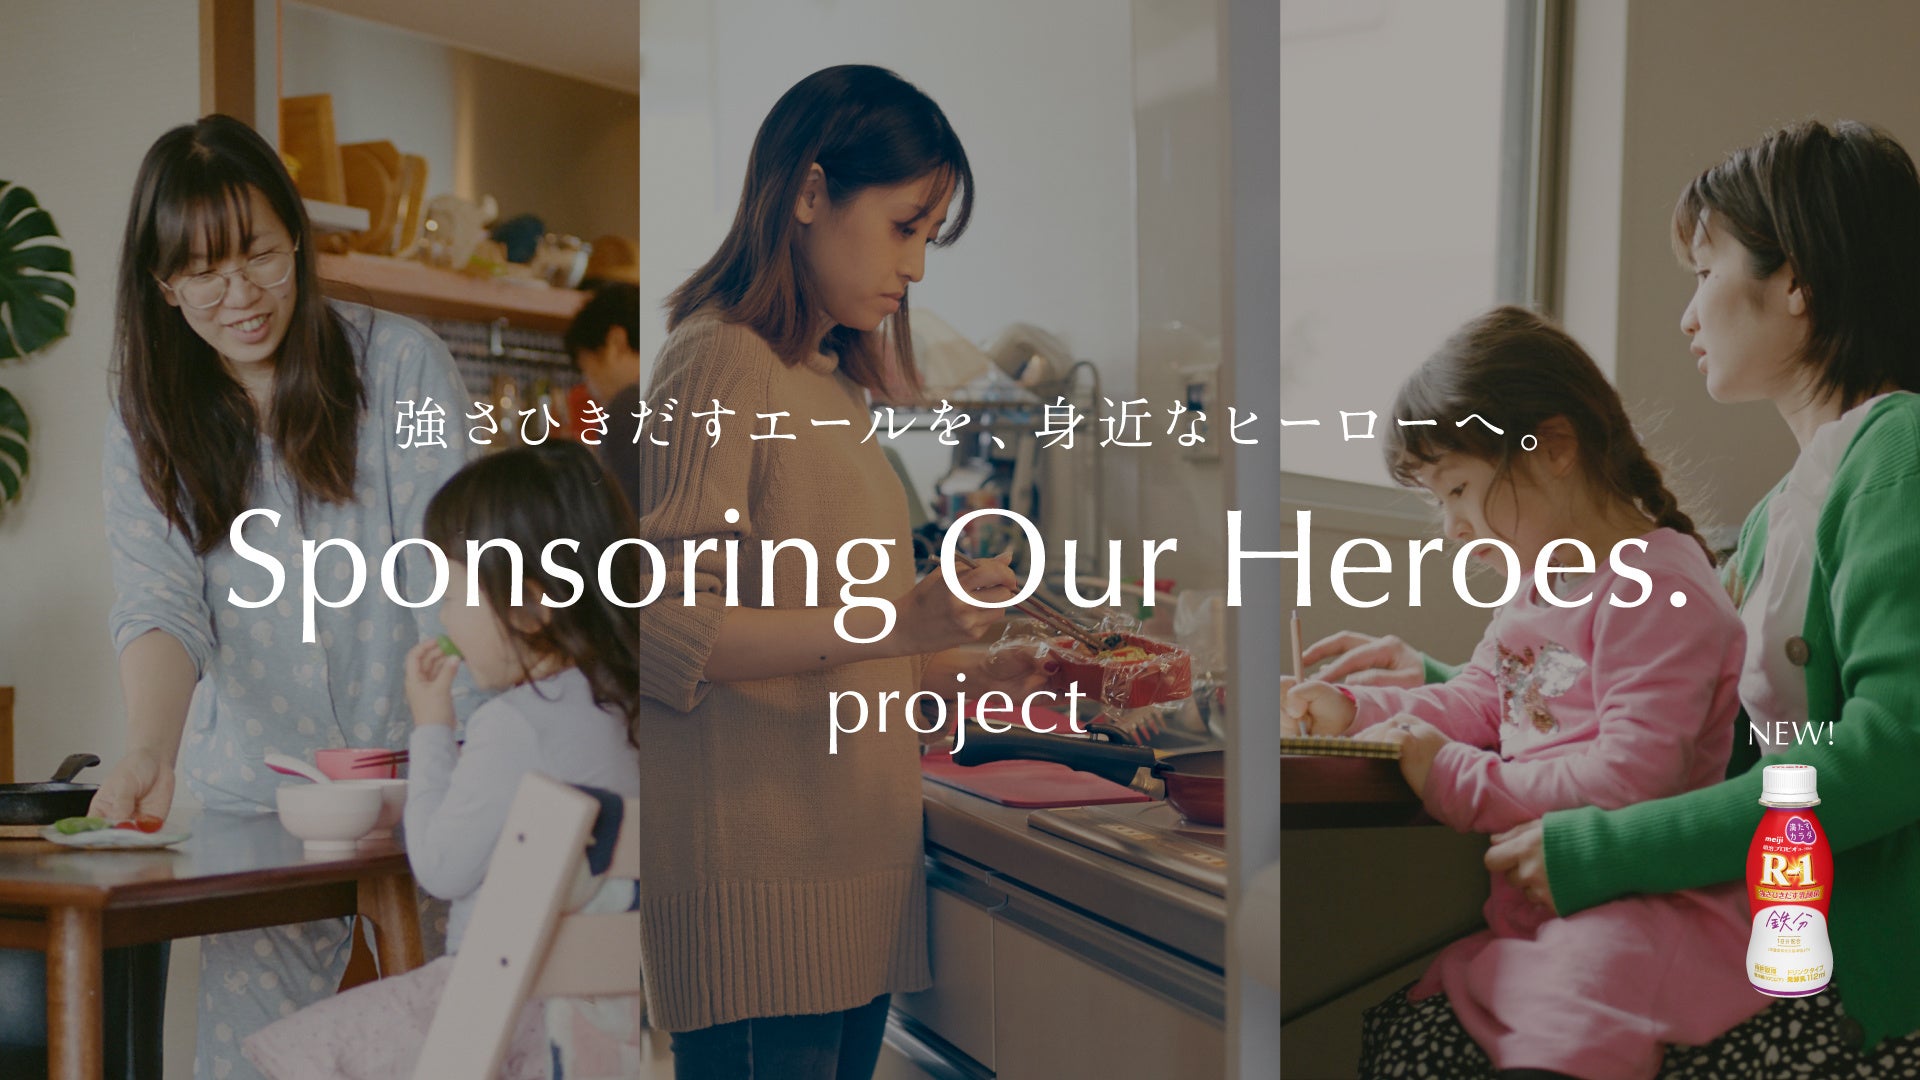 新発売の明治R-1「満たすカラダ鉄分」が、日々頑張る女性たちとスポンサー契約。1年間の体調管理をサポートするプロジェクト「Sponsoring Our Heroes.」始動。#日々の頑張りにエールを